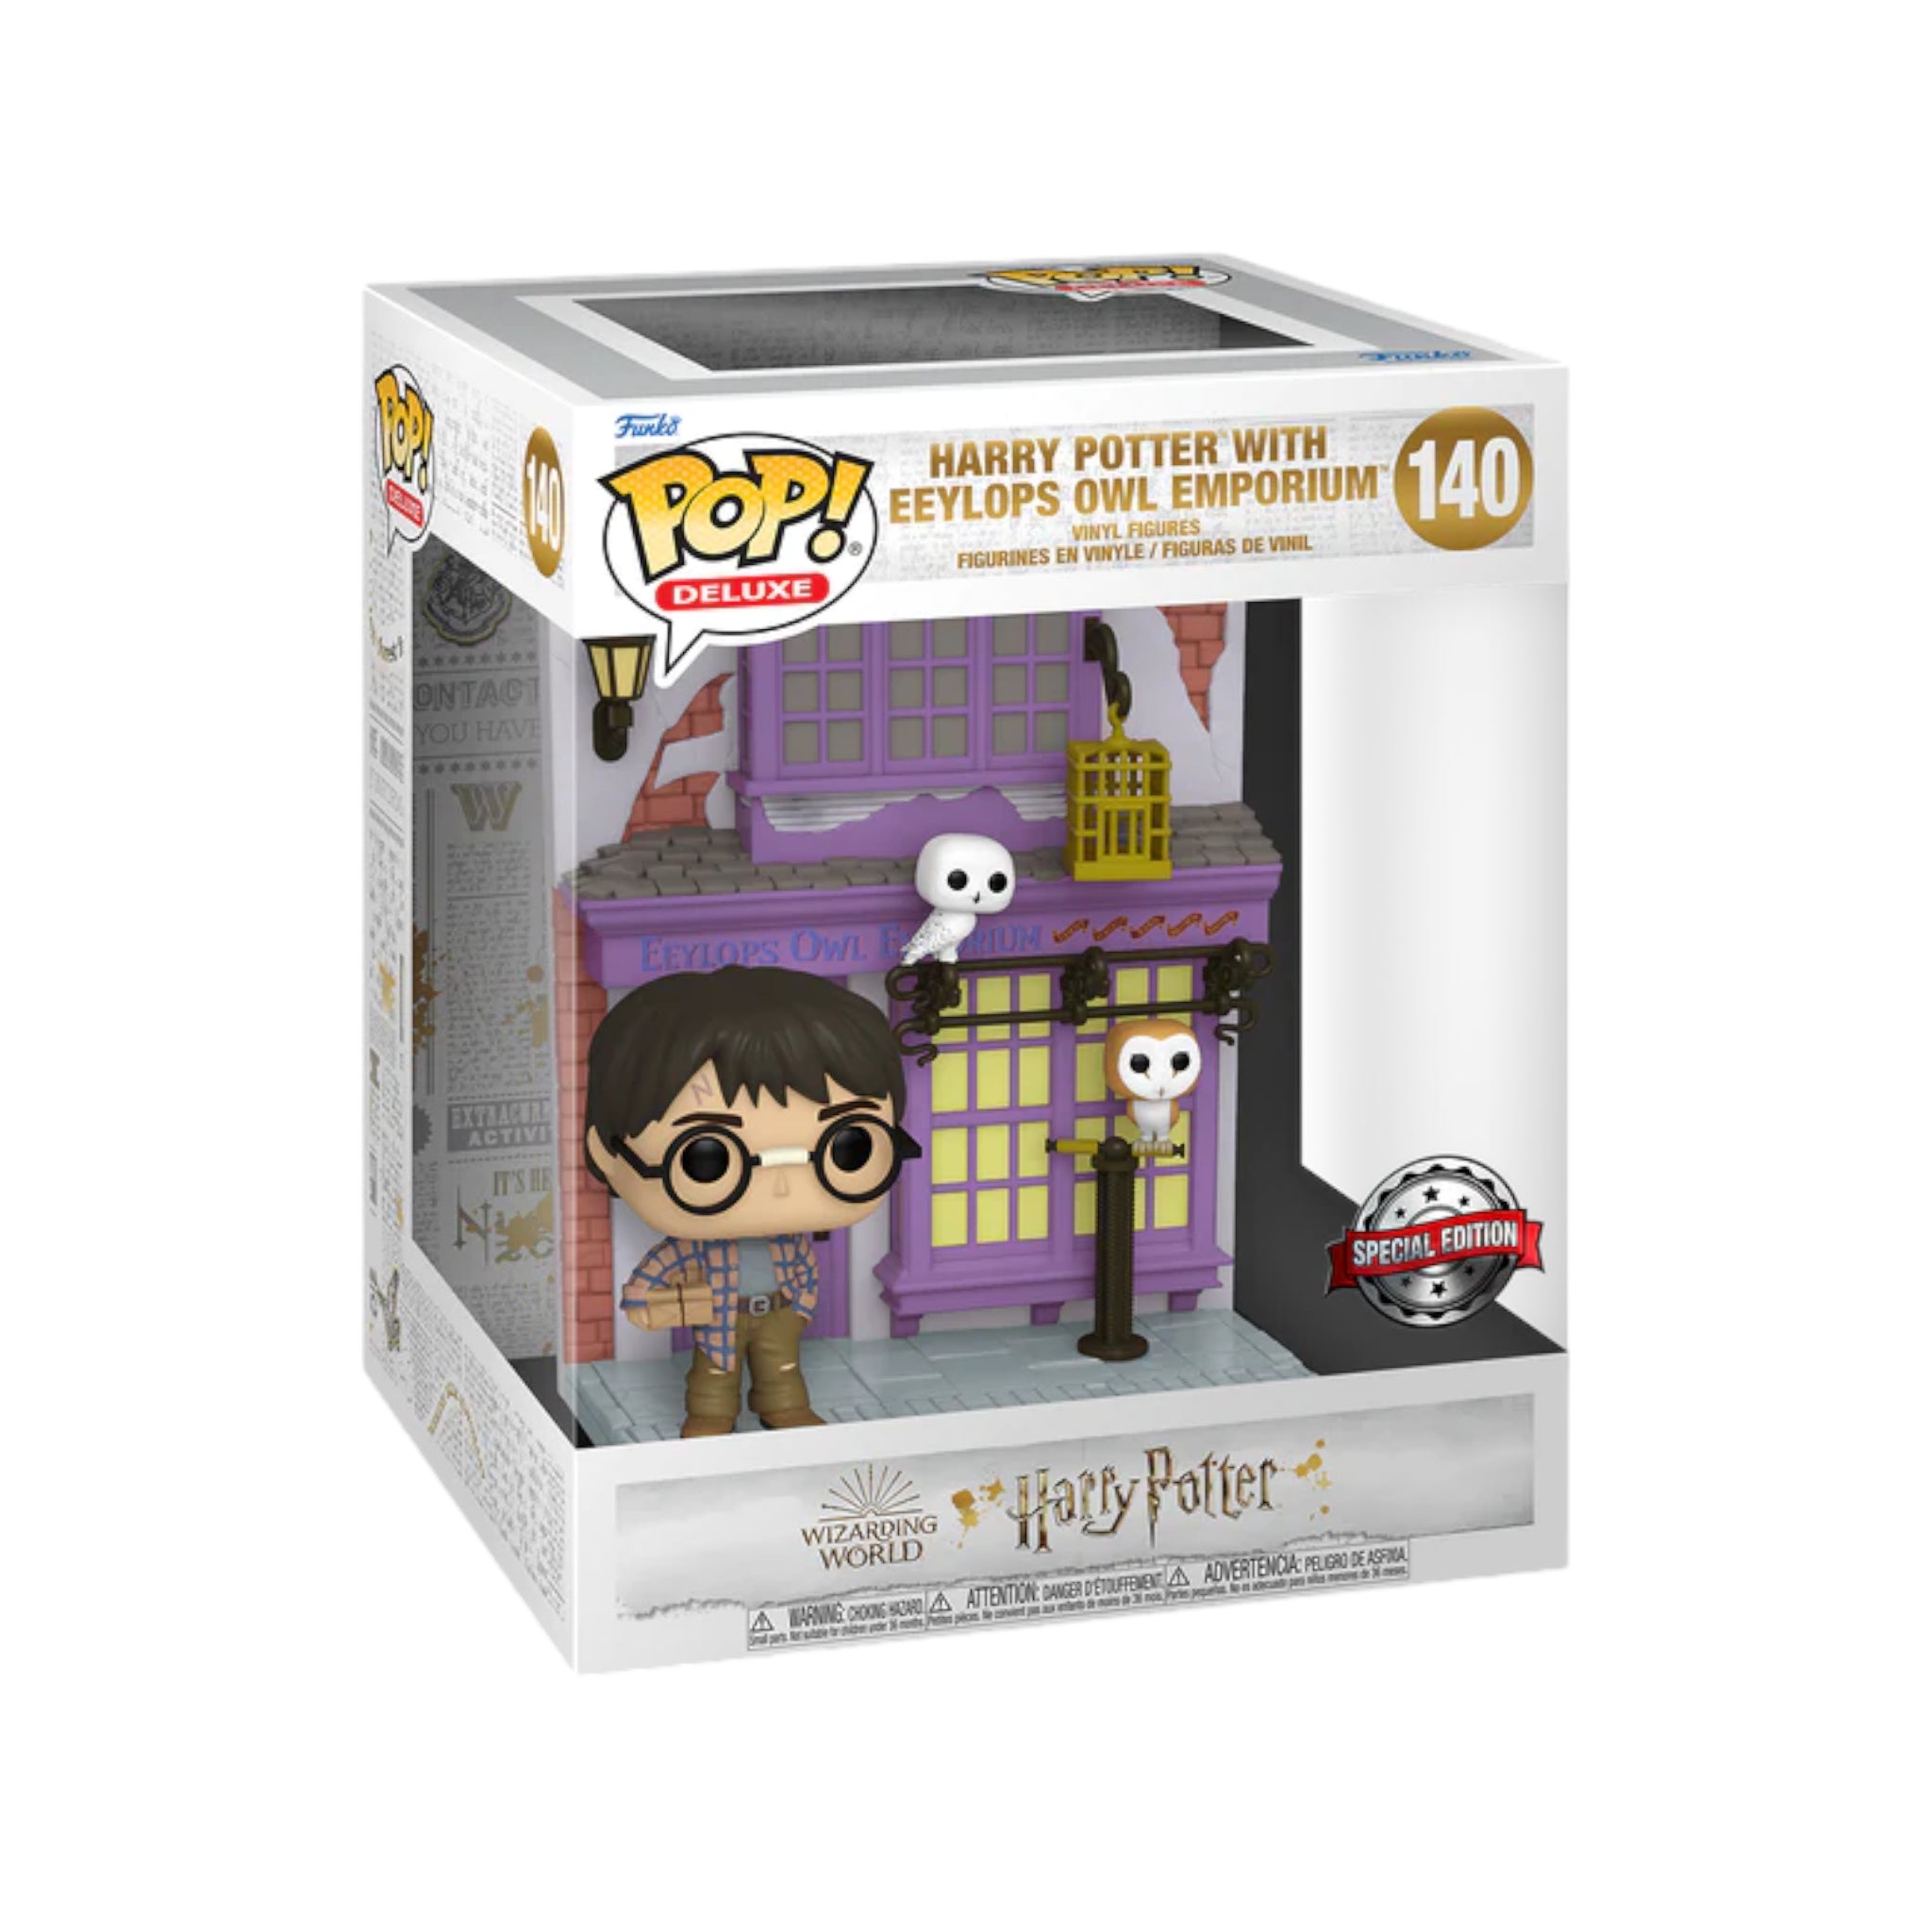 Harry Potter with Eeylops Owl Emporium #140 Deluxe Funko Pop! - Harry Potter - Special Edition